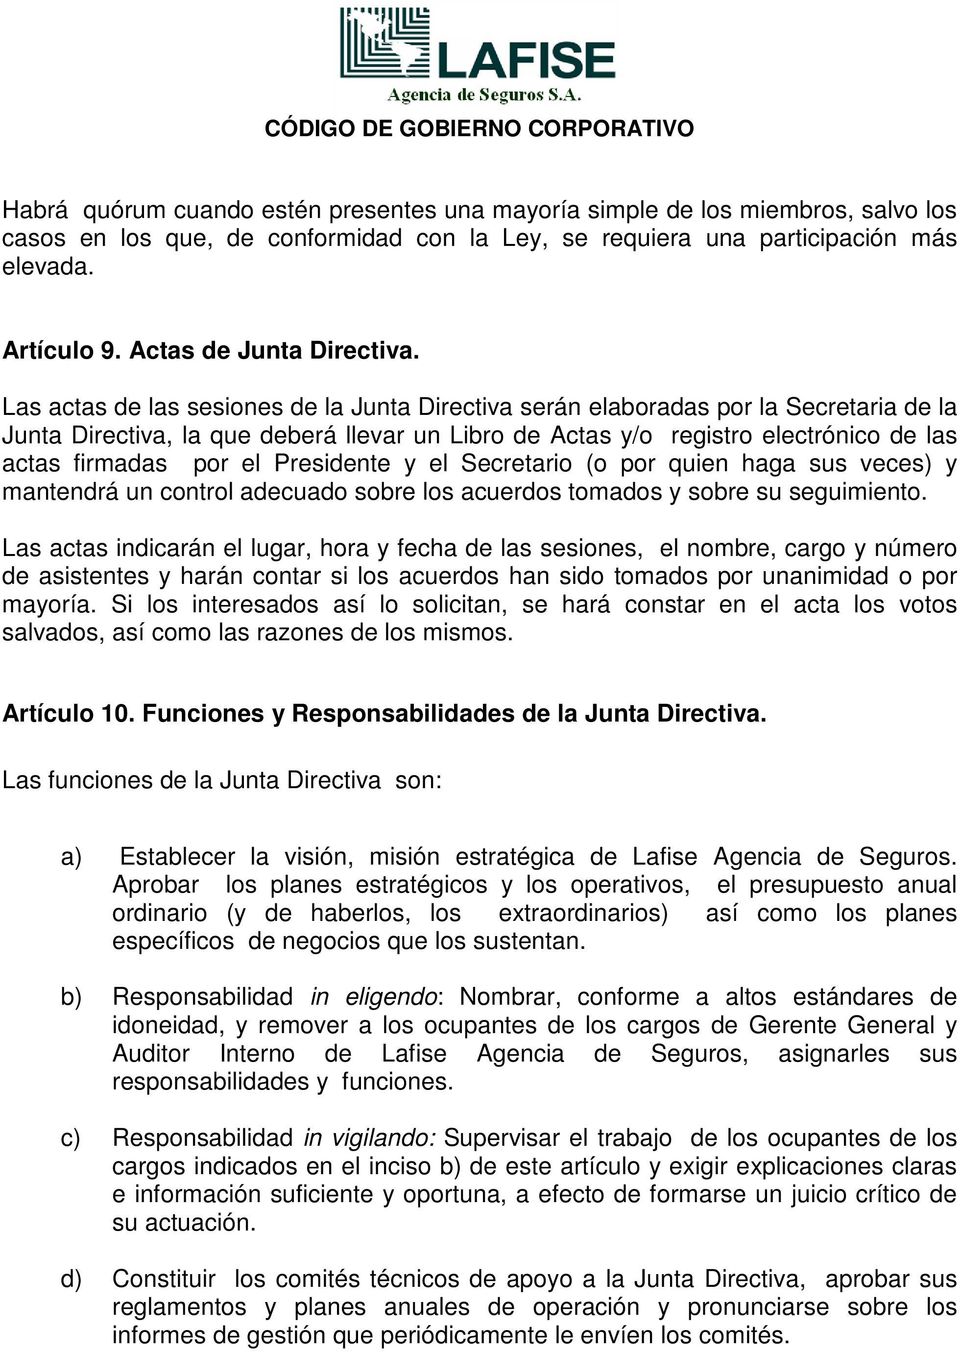 Las actas de las sesiones de la Junta Directiva serán elaboradas por la Secretaria de la Junta Directiva, la que deberá llevar un Libro de Actas y/o registro electrónico de las actas firmadas por el